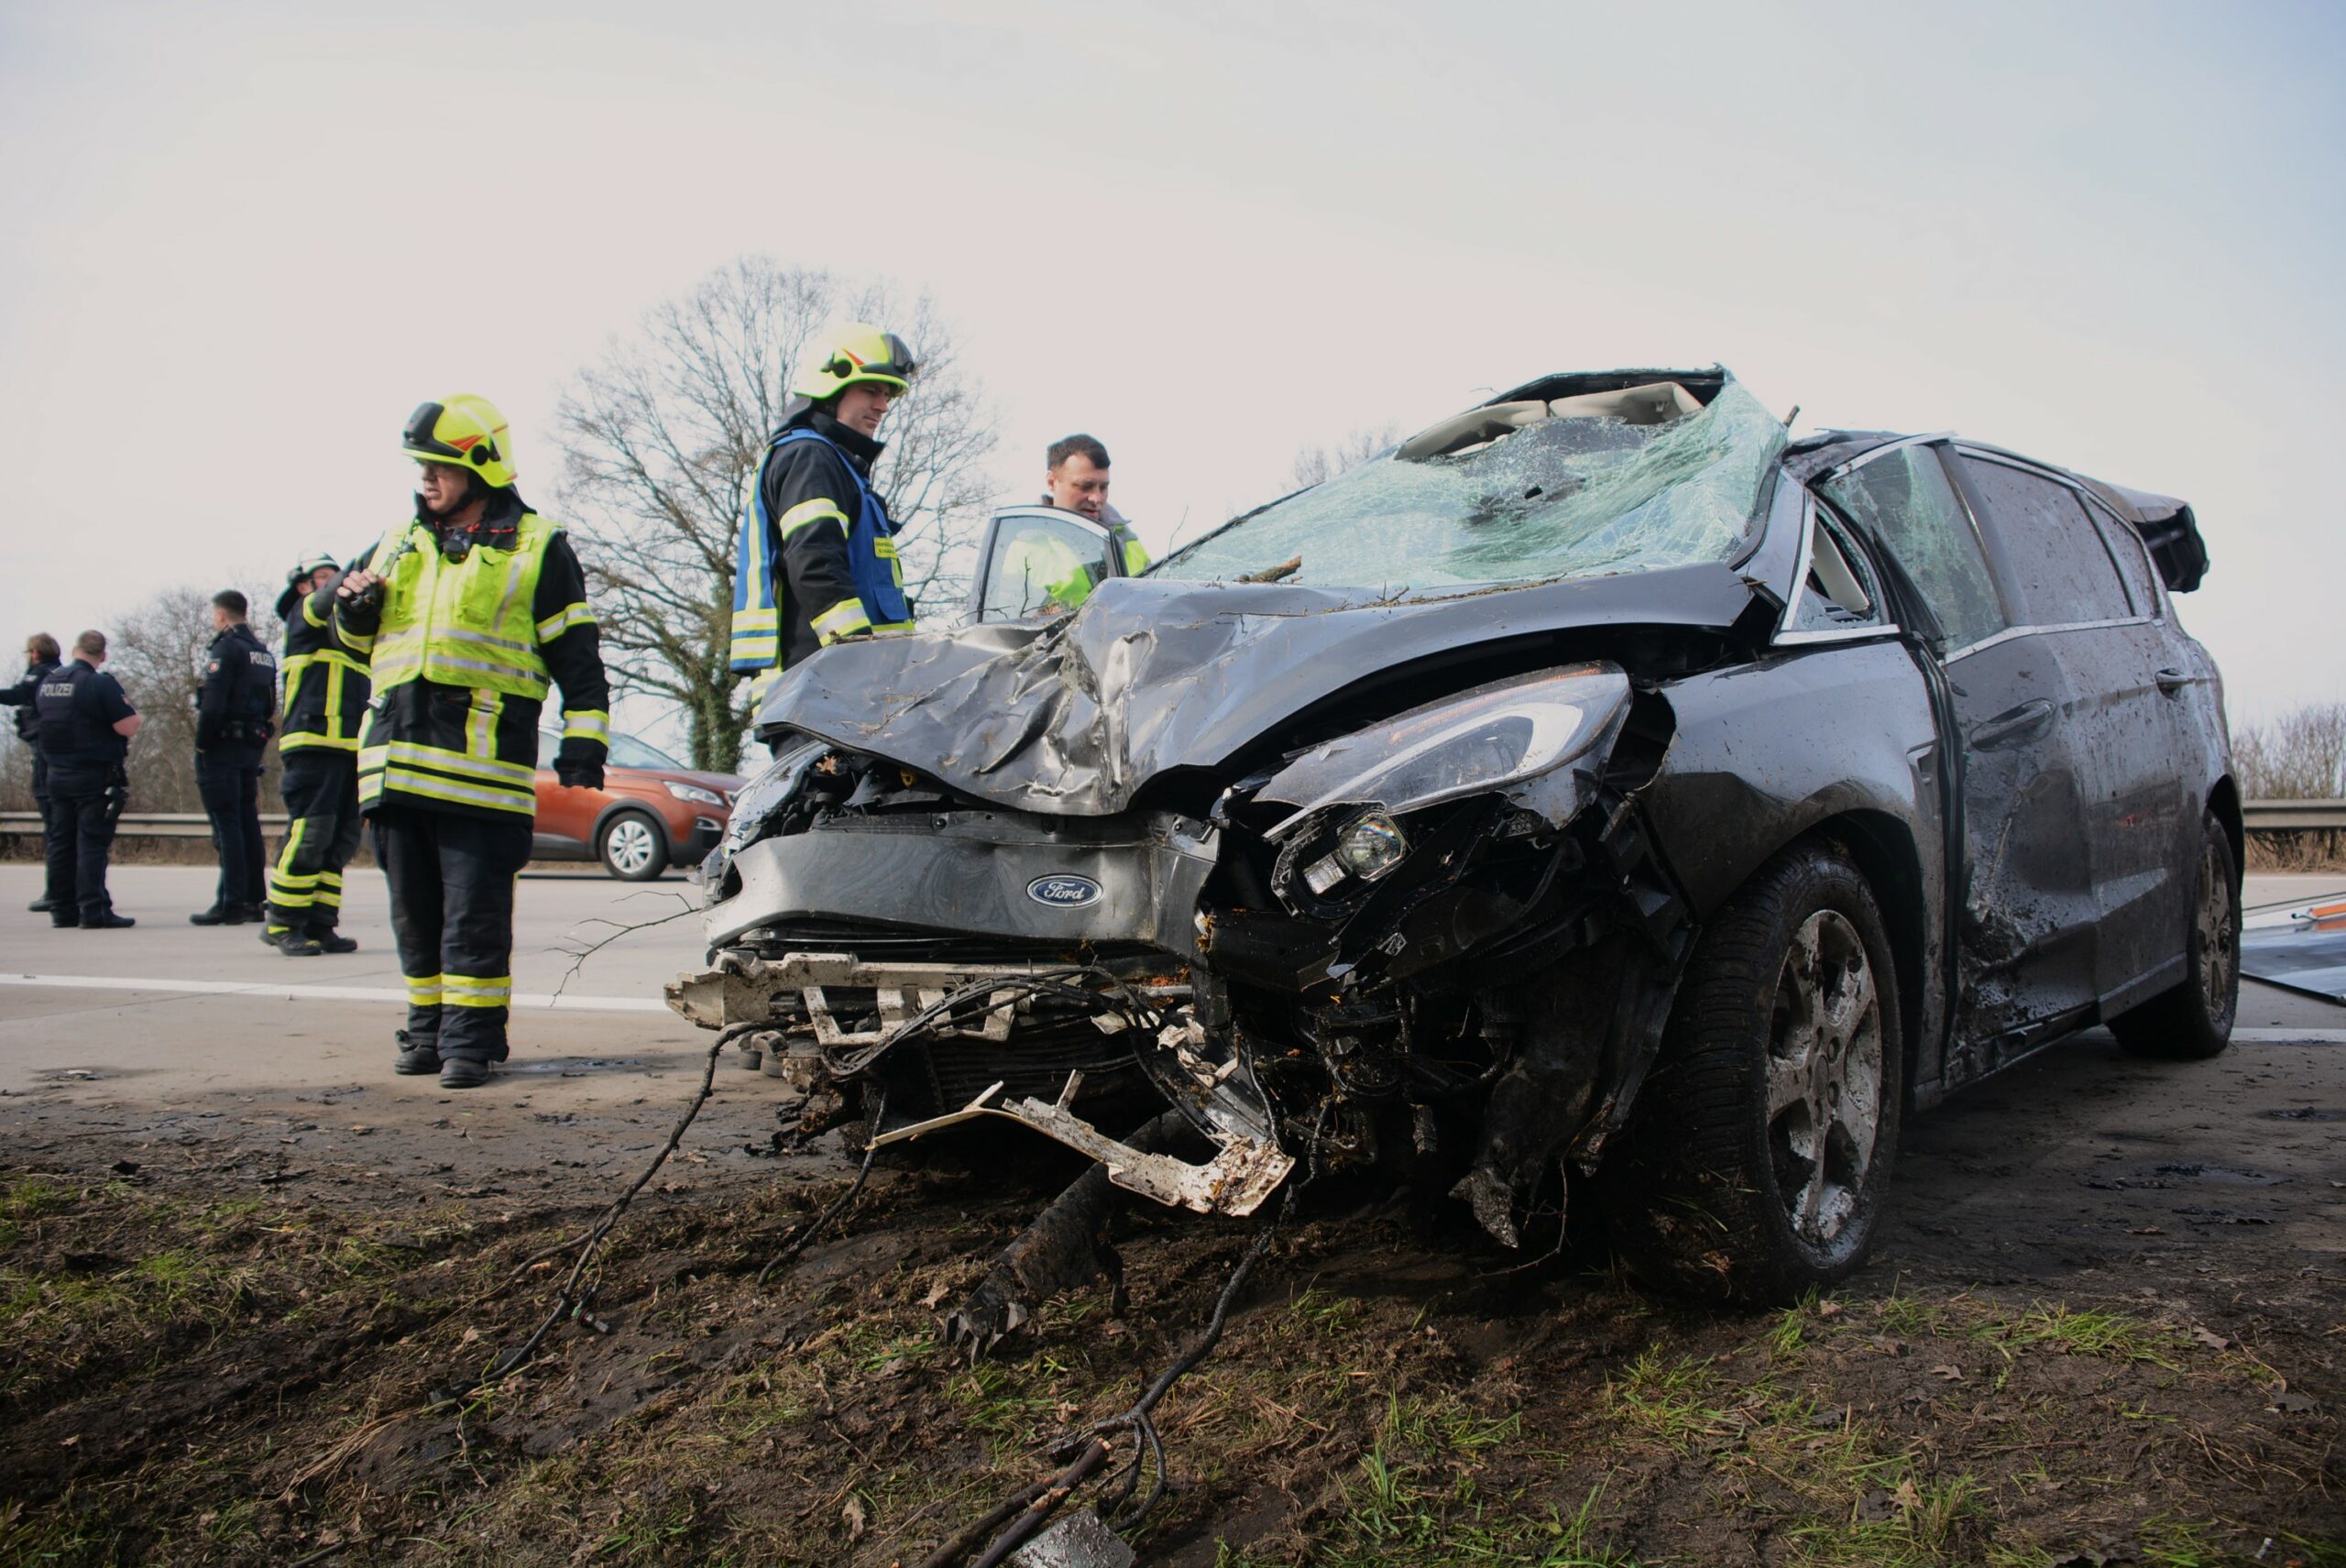 Schwerer Unfall auf A1 bei Bargteheide. Fünf verletzte in Klinik. Autobahn Richtung Lübeck gesperrt